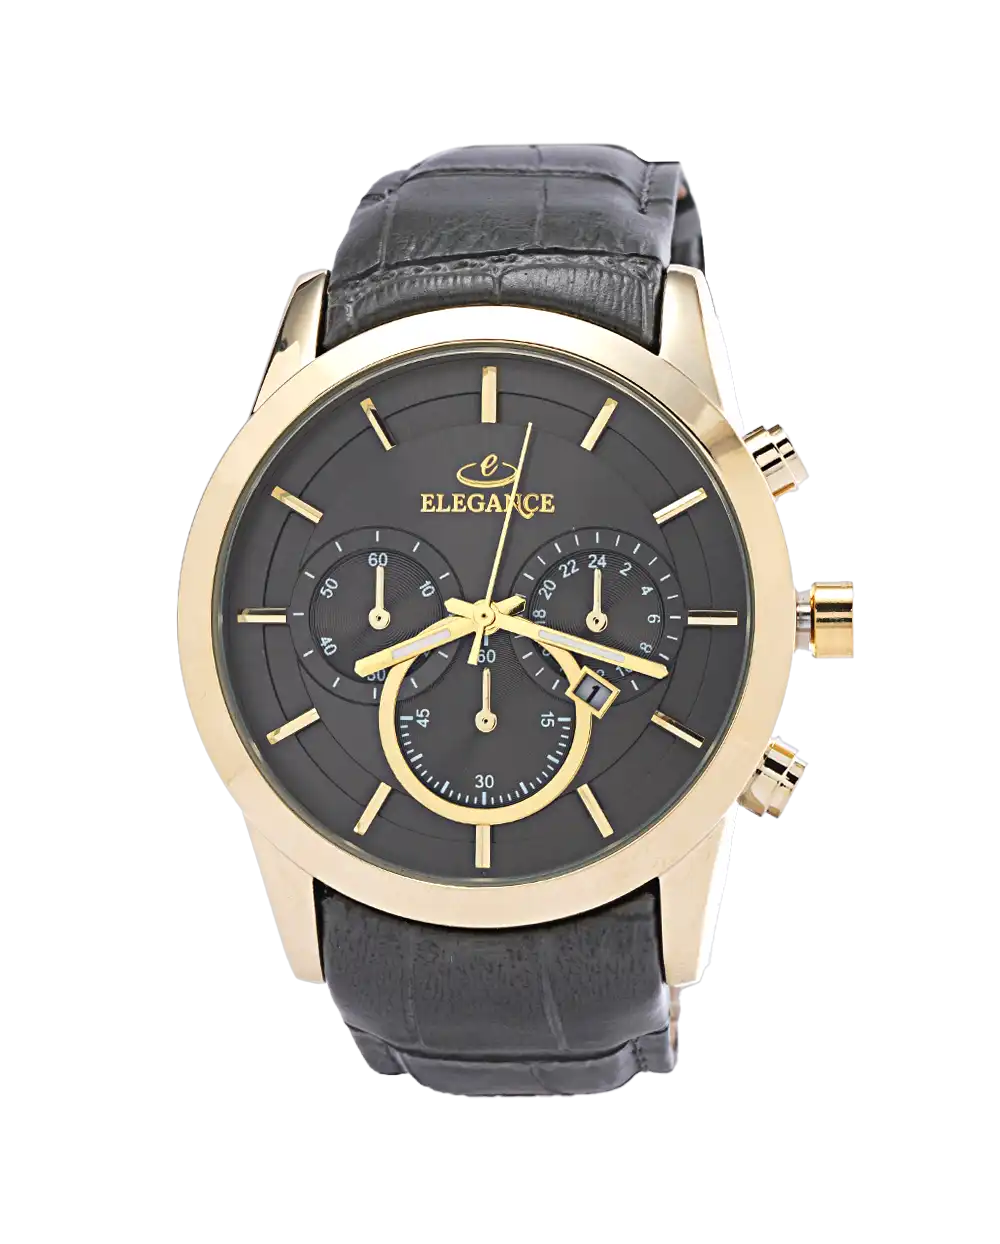 خرید ساعت مچی مردانه الگانس ELEGANCE مدل 1725 بند خاکستری با بهترین قیمت به همراه ارسال رایگان به سراسر ایران و جعبه ی ساعت